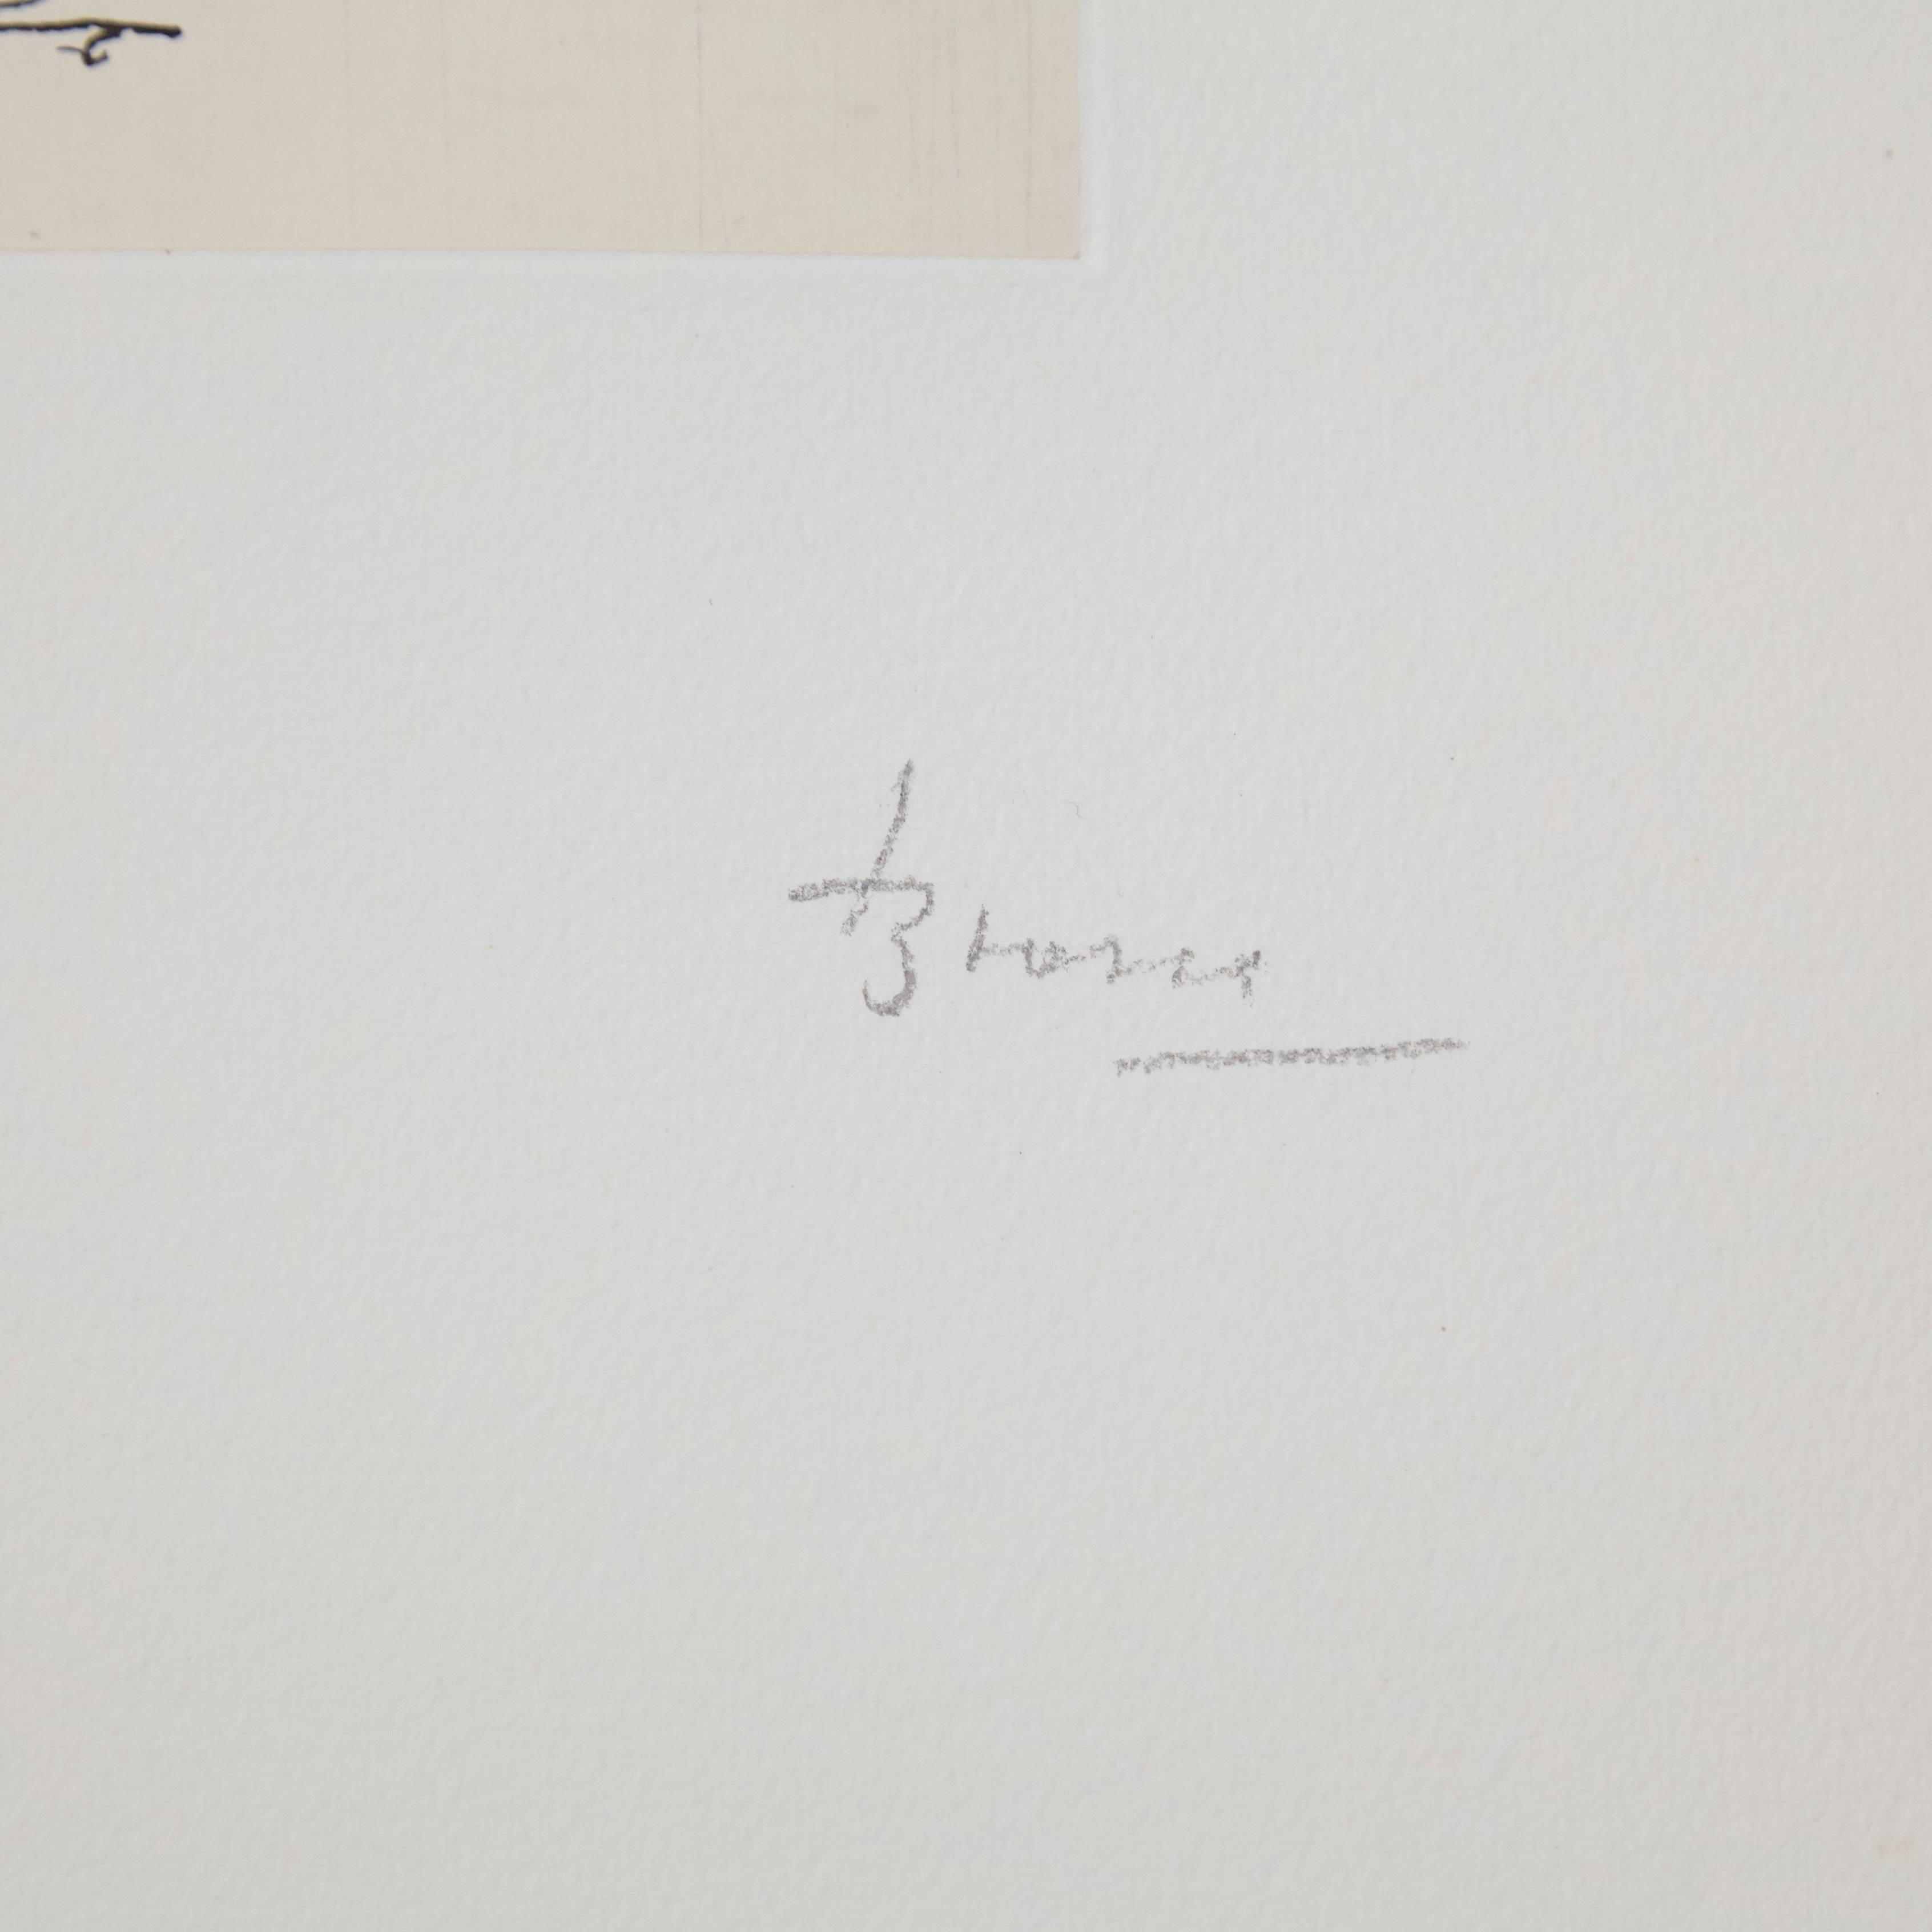 Lithografie von Joan Brossa, um 1970.

Limitierte Auflage von 50 Exemplaren. Nummeriert (36/50) und handsigniert.

In gutem Originalzustand.

Joan Brossa (1919-1998) war ein katalanischer Dichter, Dramatiker, Grafiker und bildender Künstler.